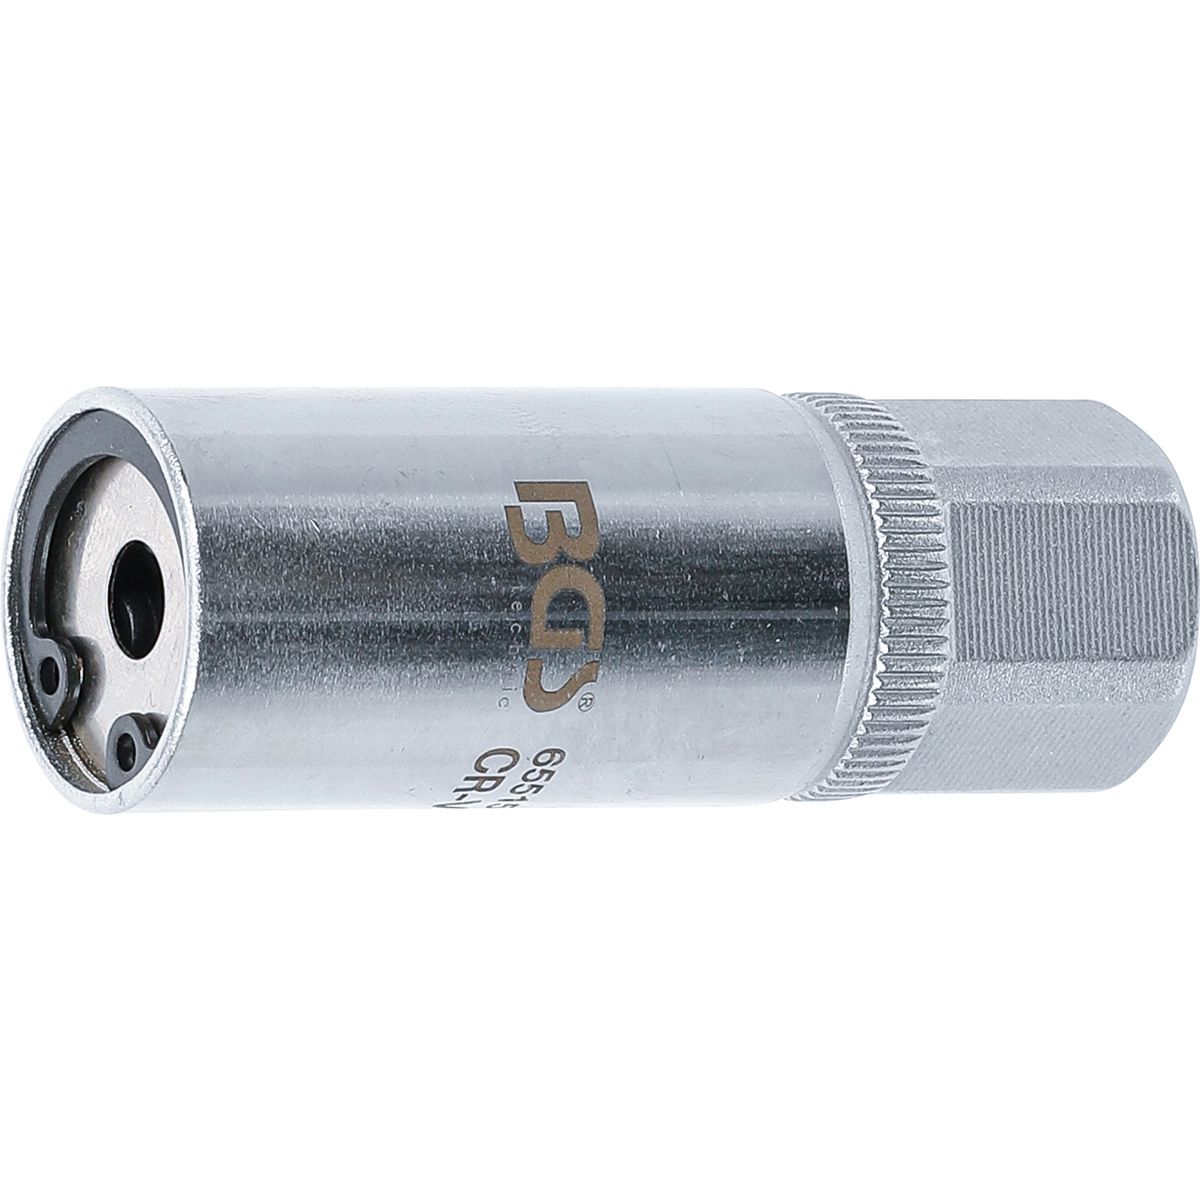 Extractor de espárragos | 10 mm (3/8" ) | 5 mm